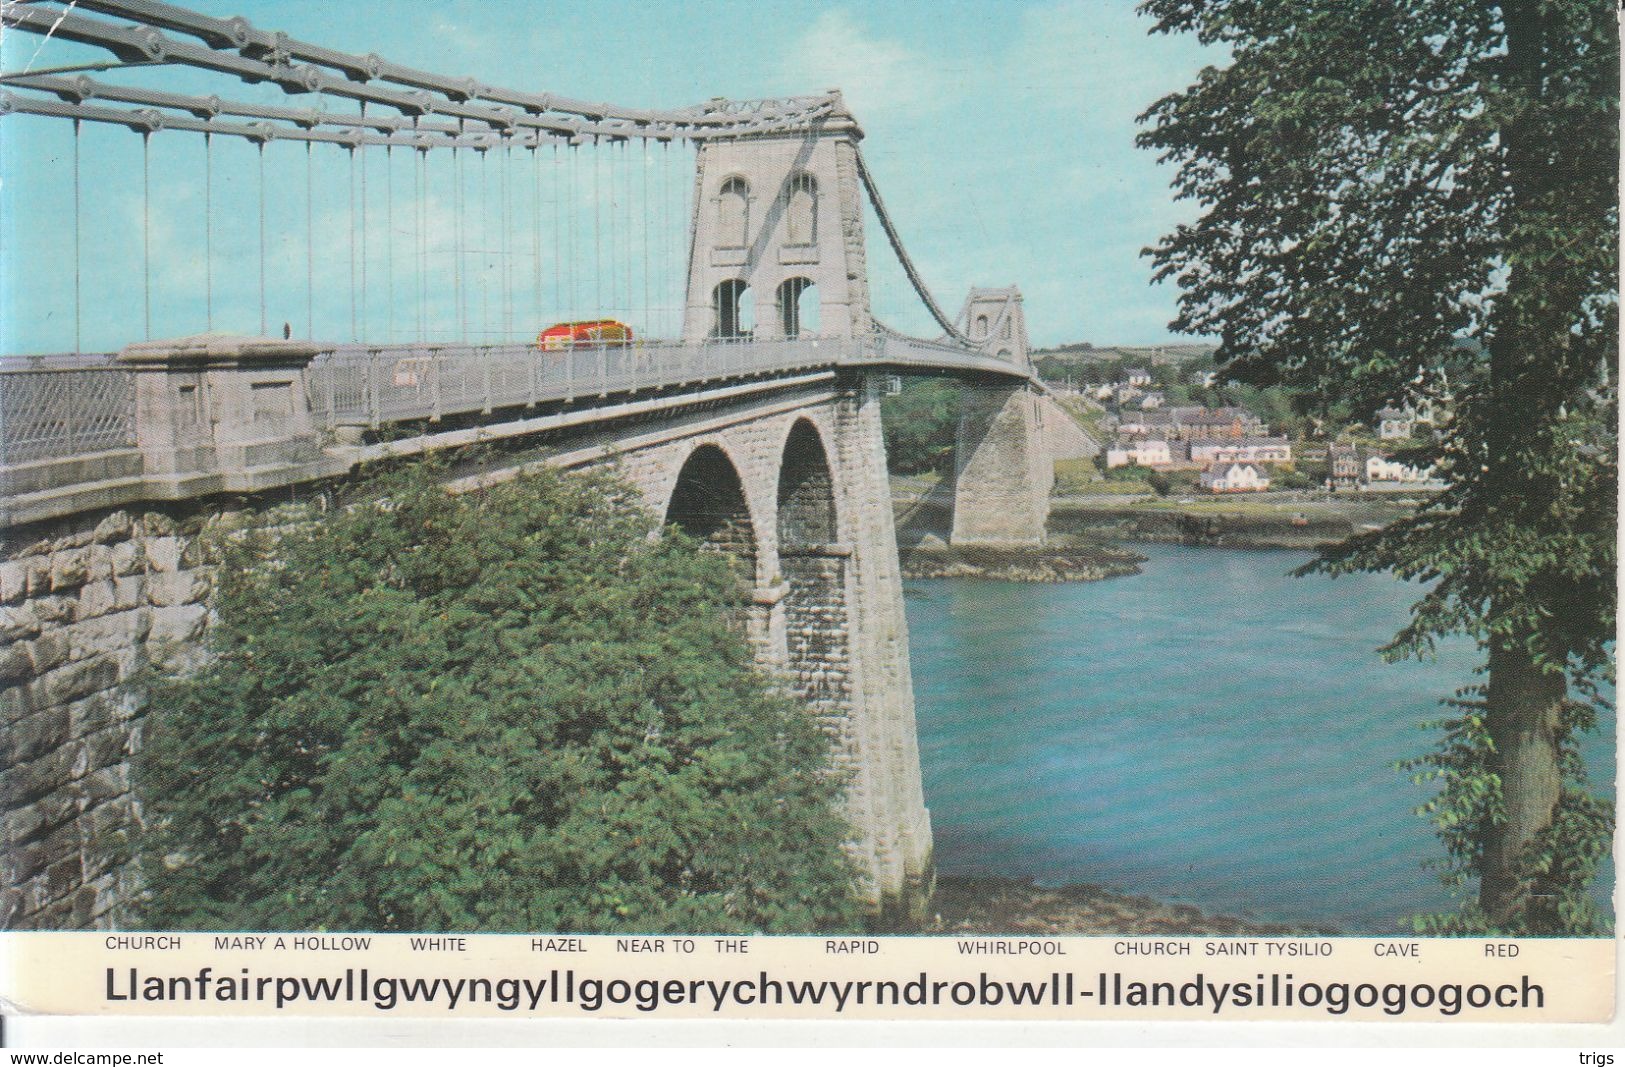 Llanfairpwllgwyngyllgogerychwyrndrobwll-llandysiliogogogoch - Anglesey